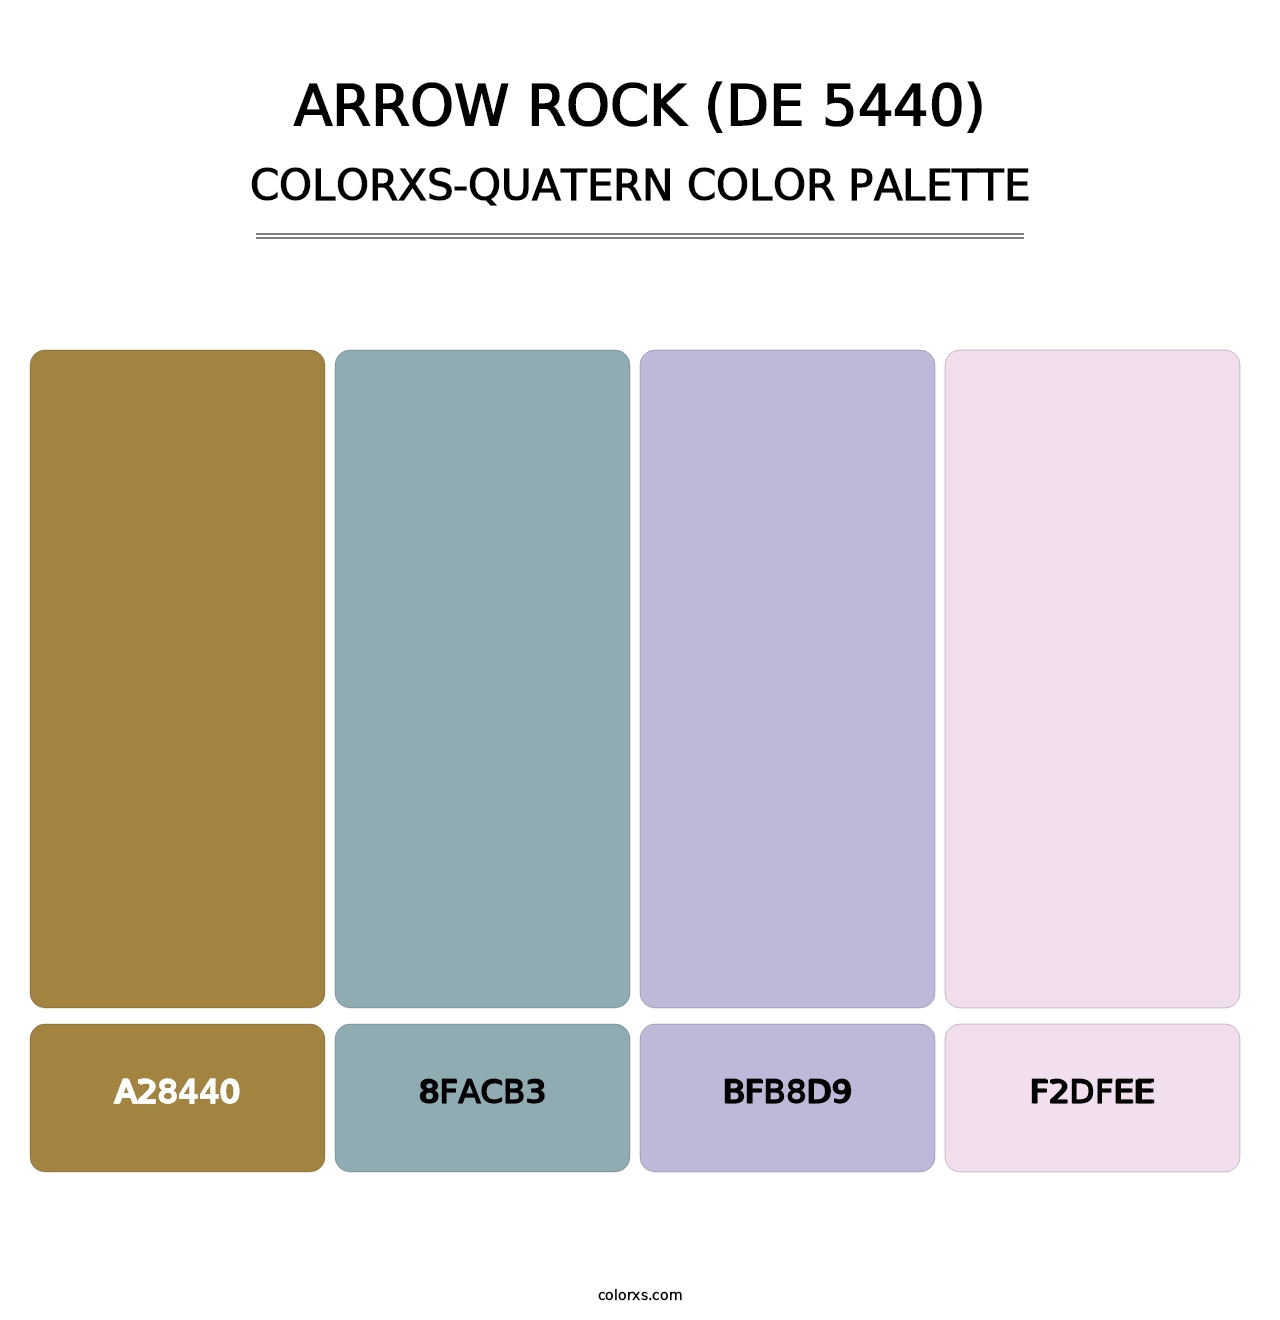 Arrow Rock (DE 5440) - Colorxs Quatern Palette